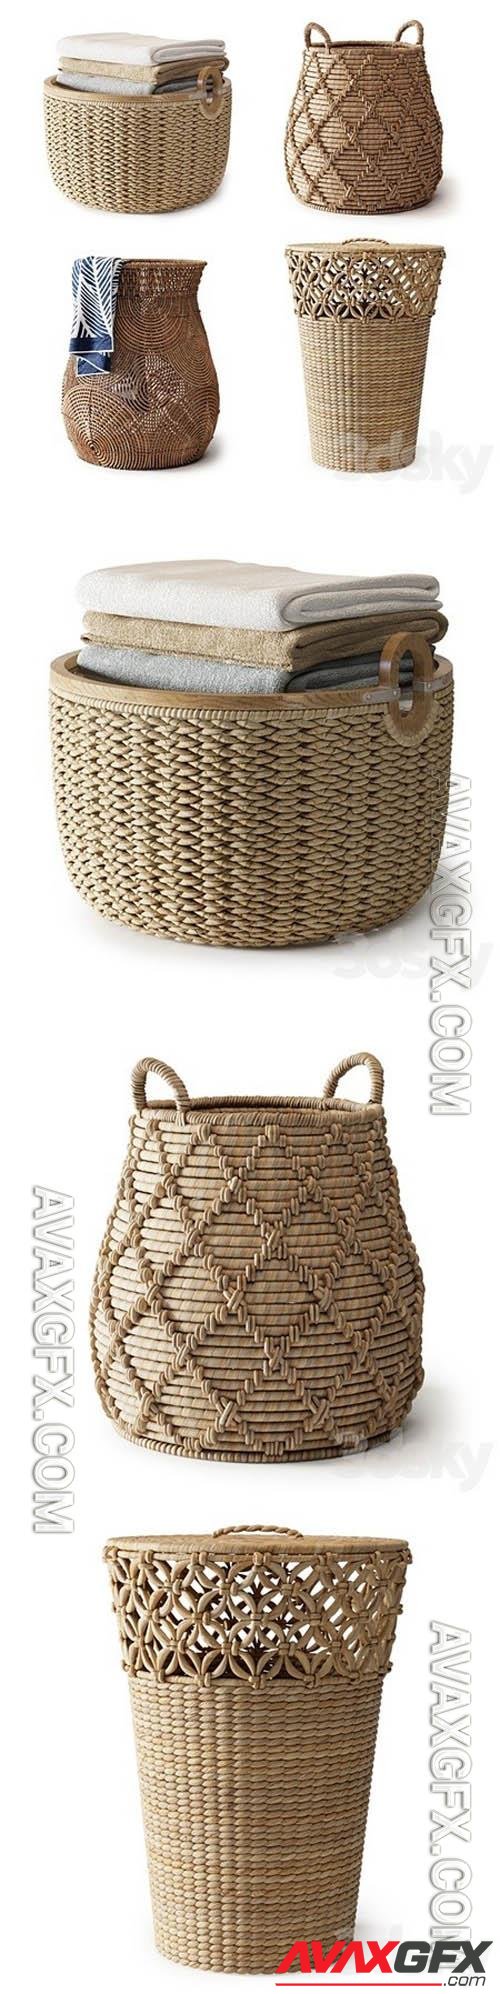 Baskets Set 06- 3d model